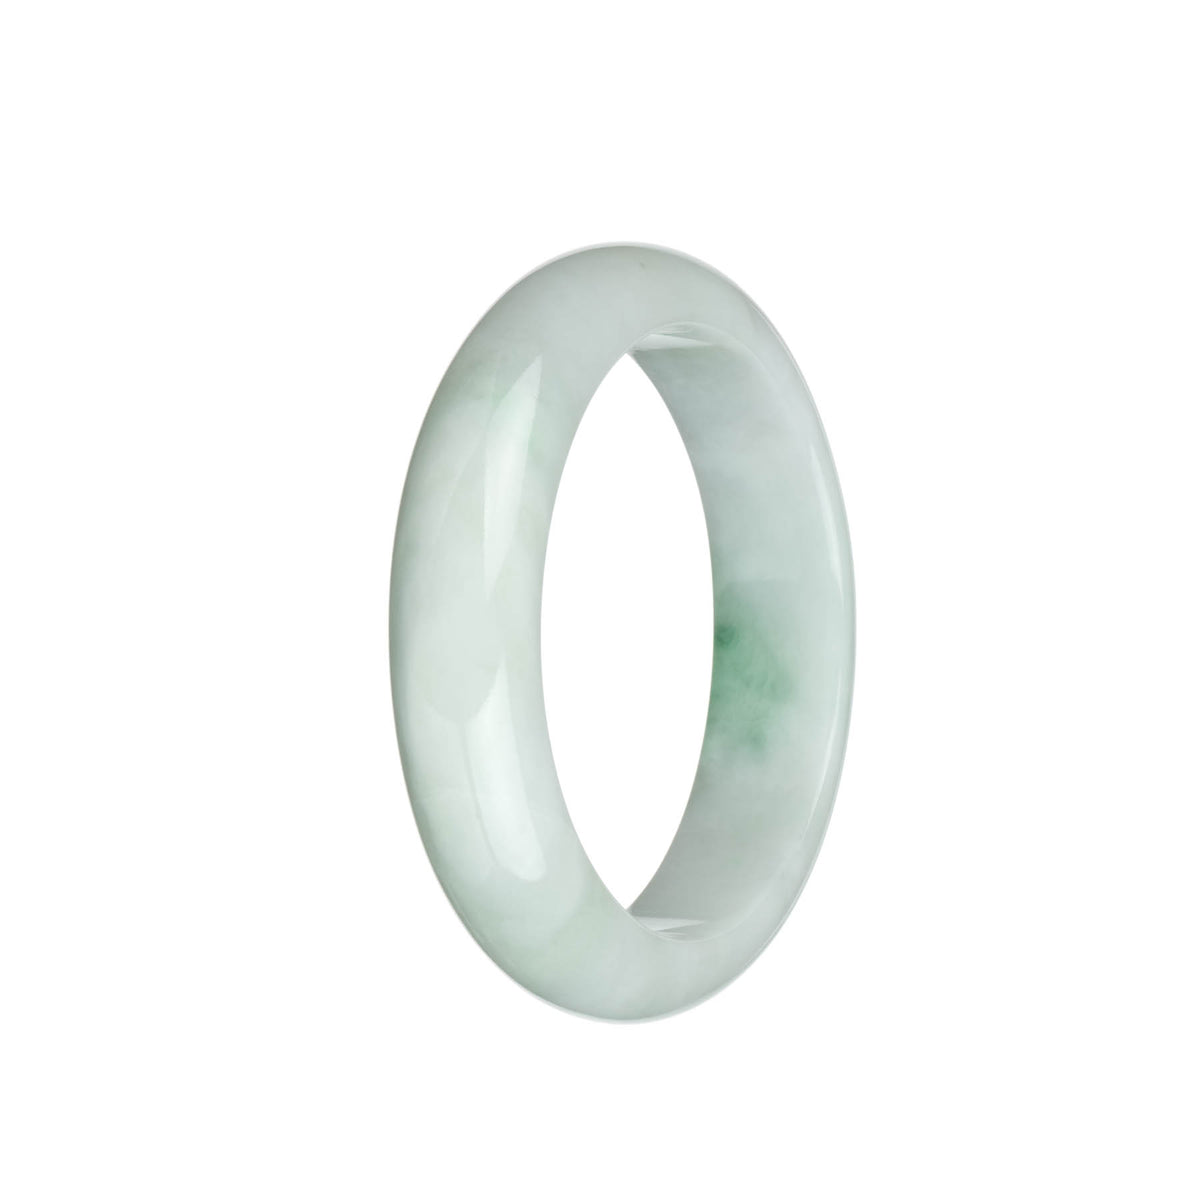 Genuine Natural White with Emerald Green Jadeite Bracelet - 58mm Half Moon